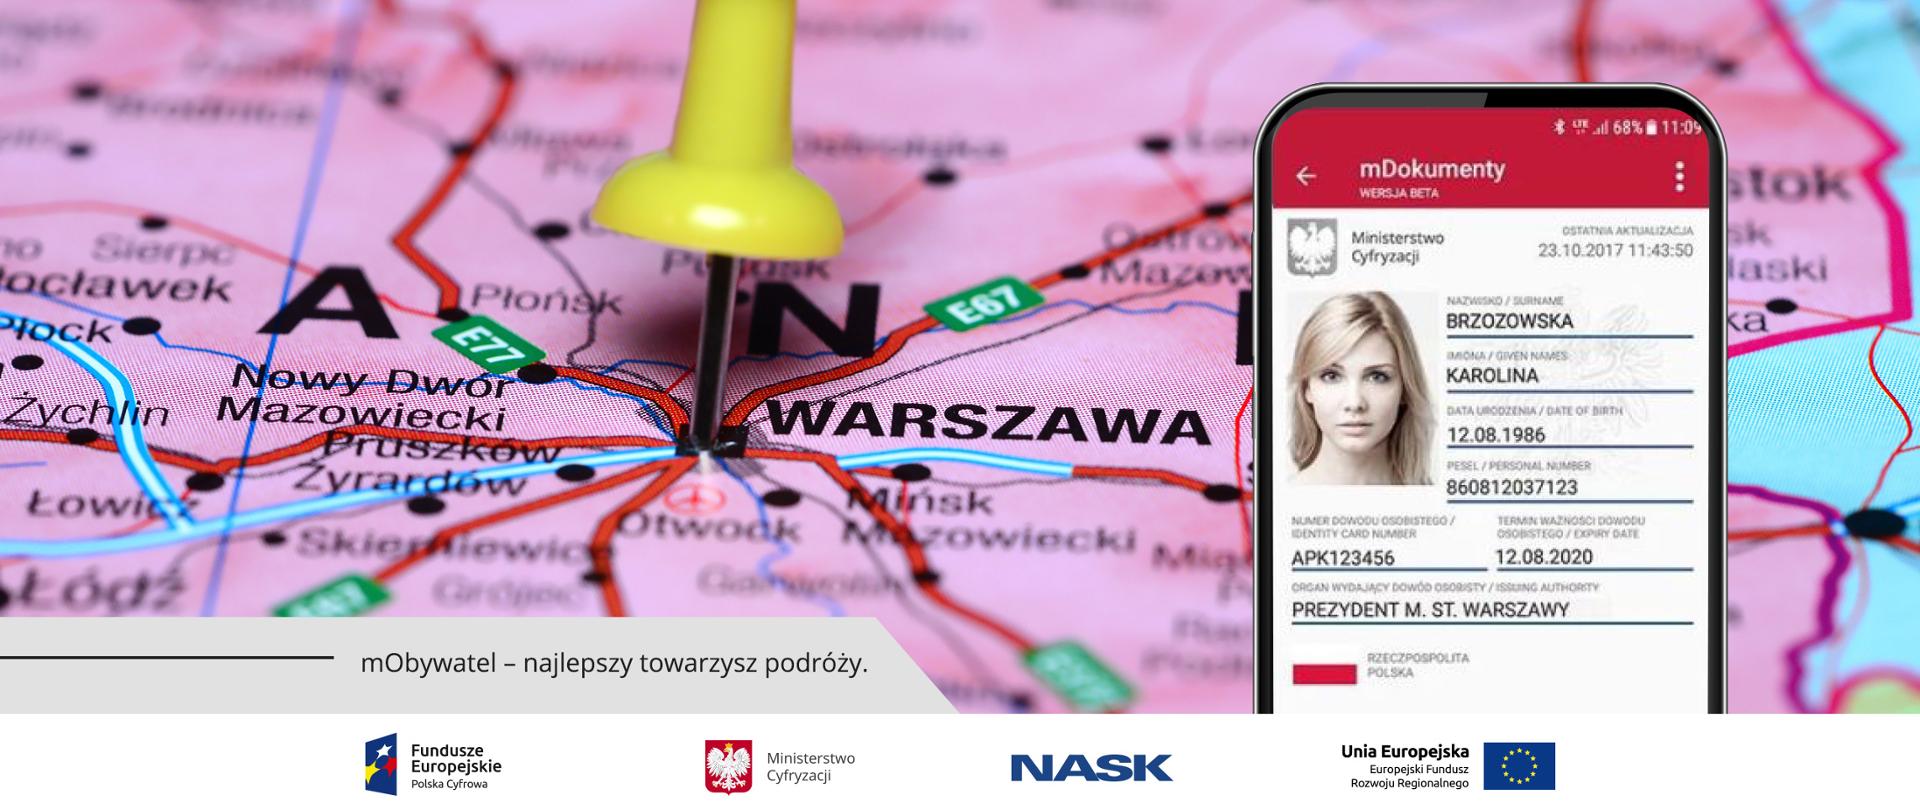 Mapa Polski - w centrum napis Warszawa. W tym miejscu znacznik - żółta pinezka. Obok, z prawej strony, zdjęcie screena aplikacji mObywatel z widoczną mTożsamością.